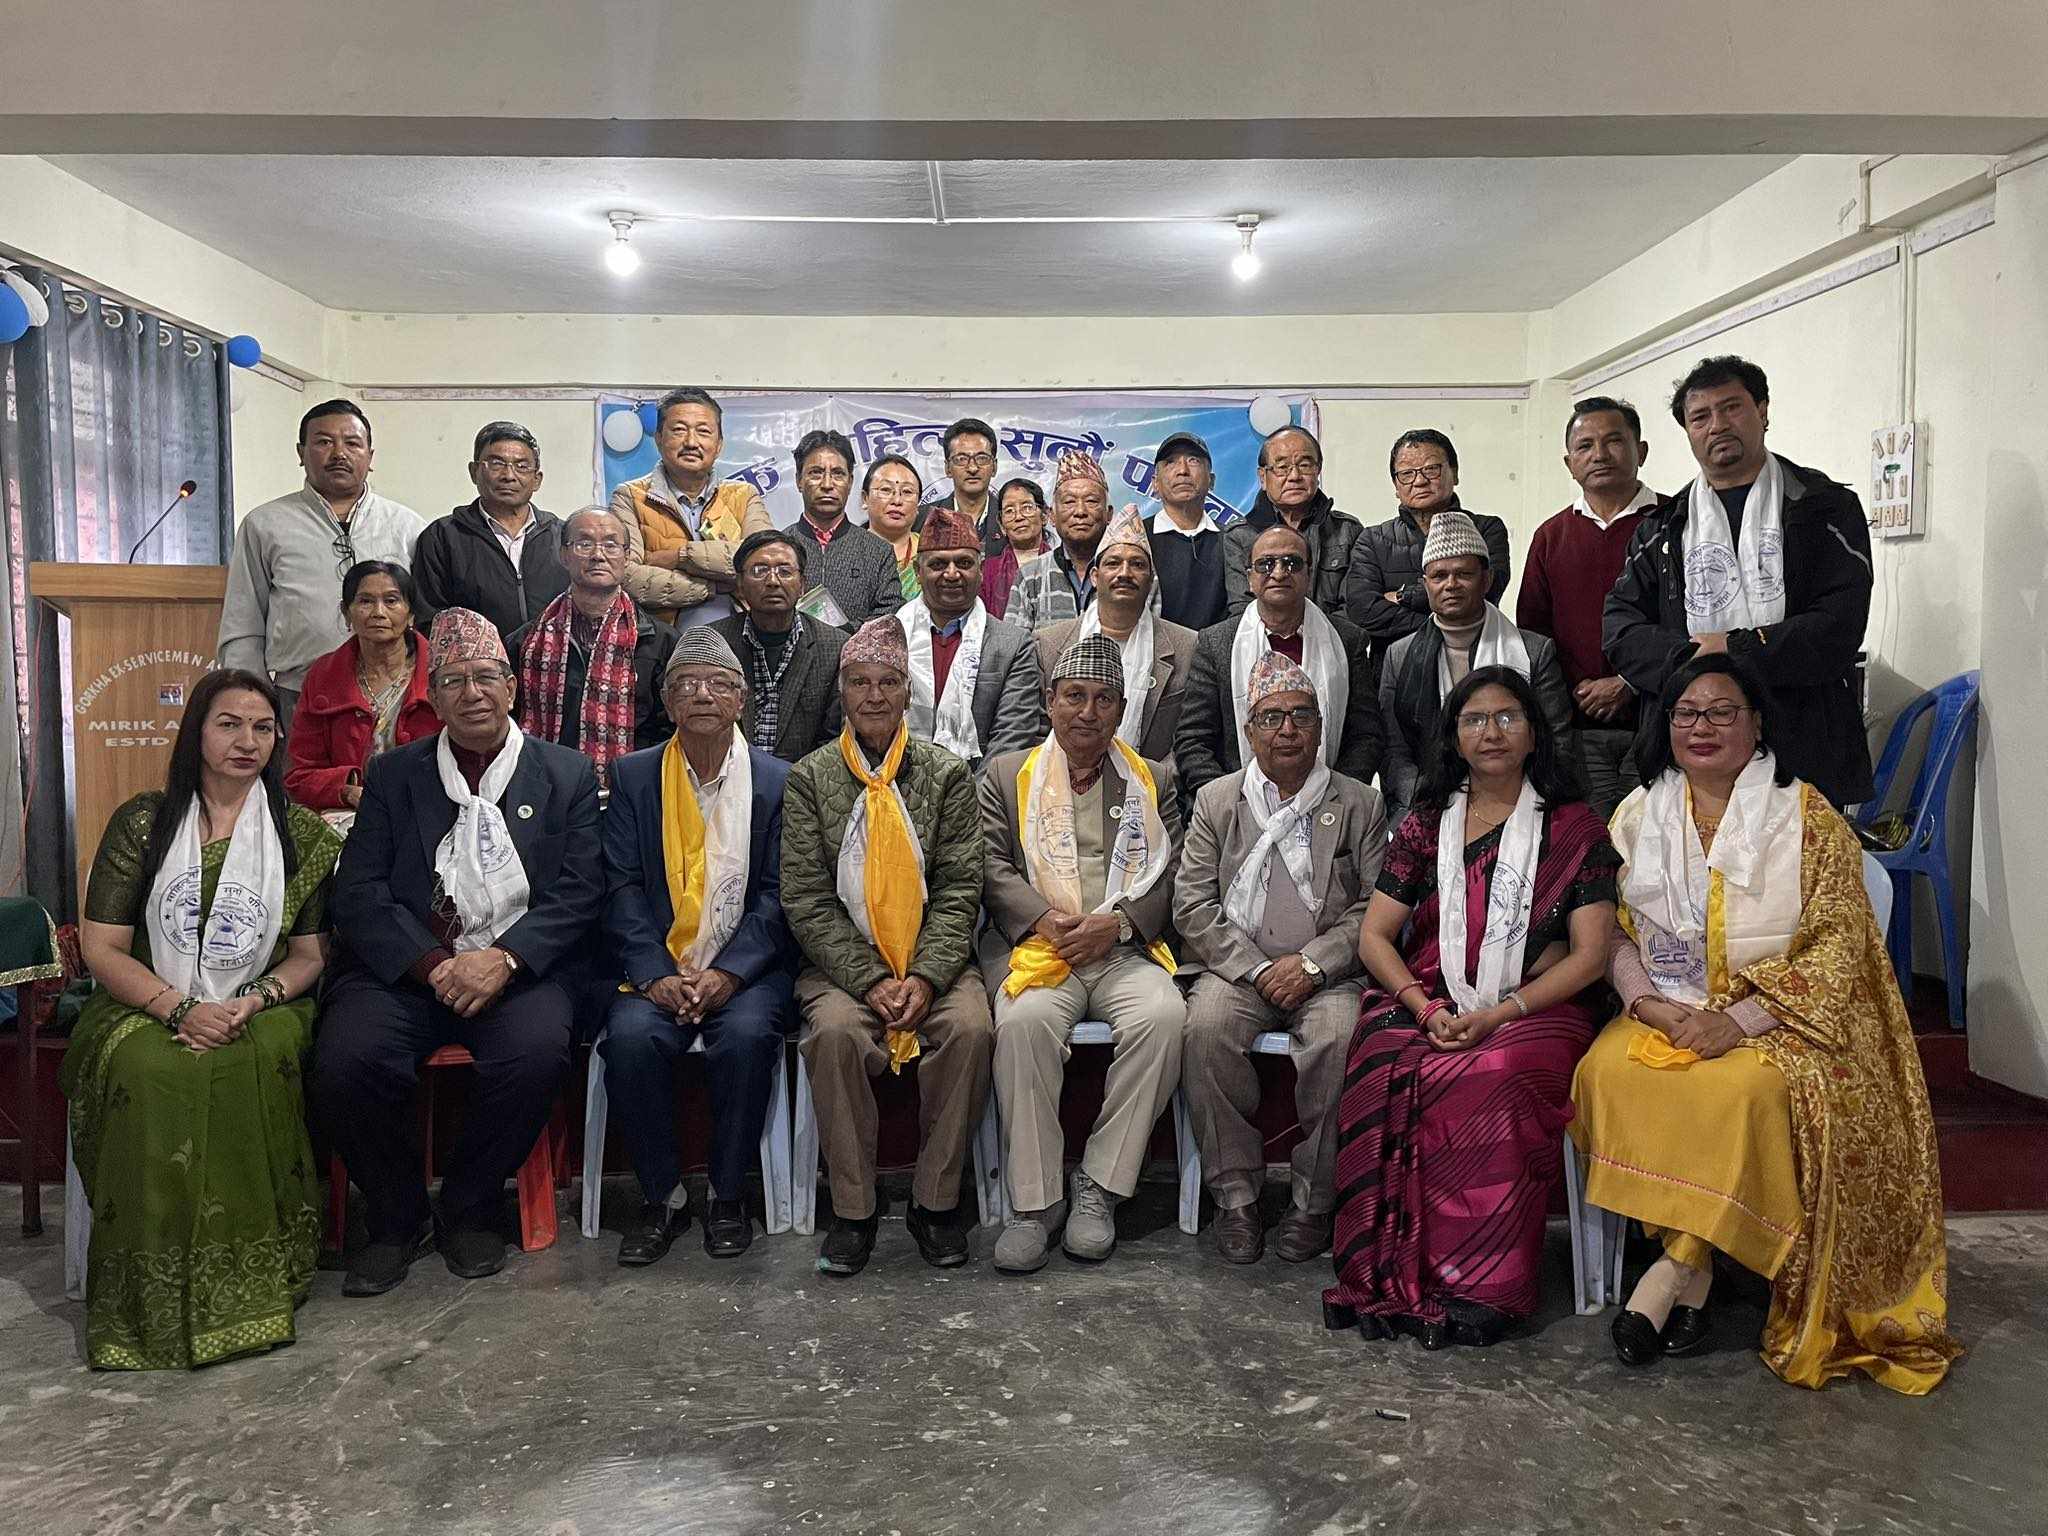 नेपाल स्रष्टा समाज मिरिकमा आयोजित साहित्यिक कार्यक्रममा सहभागी